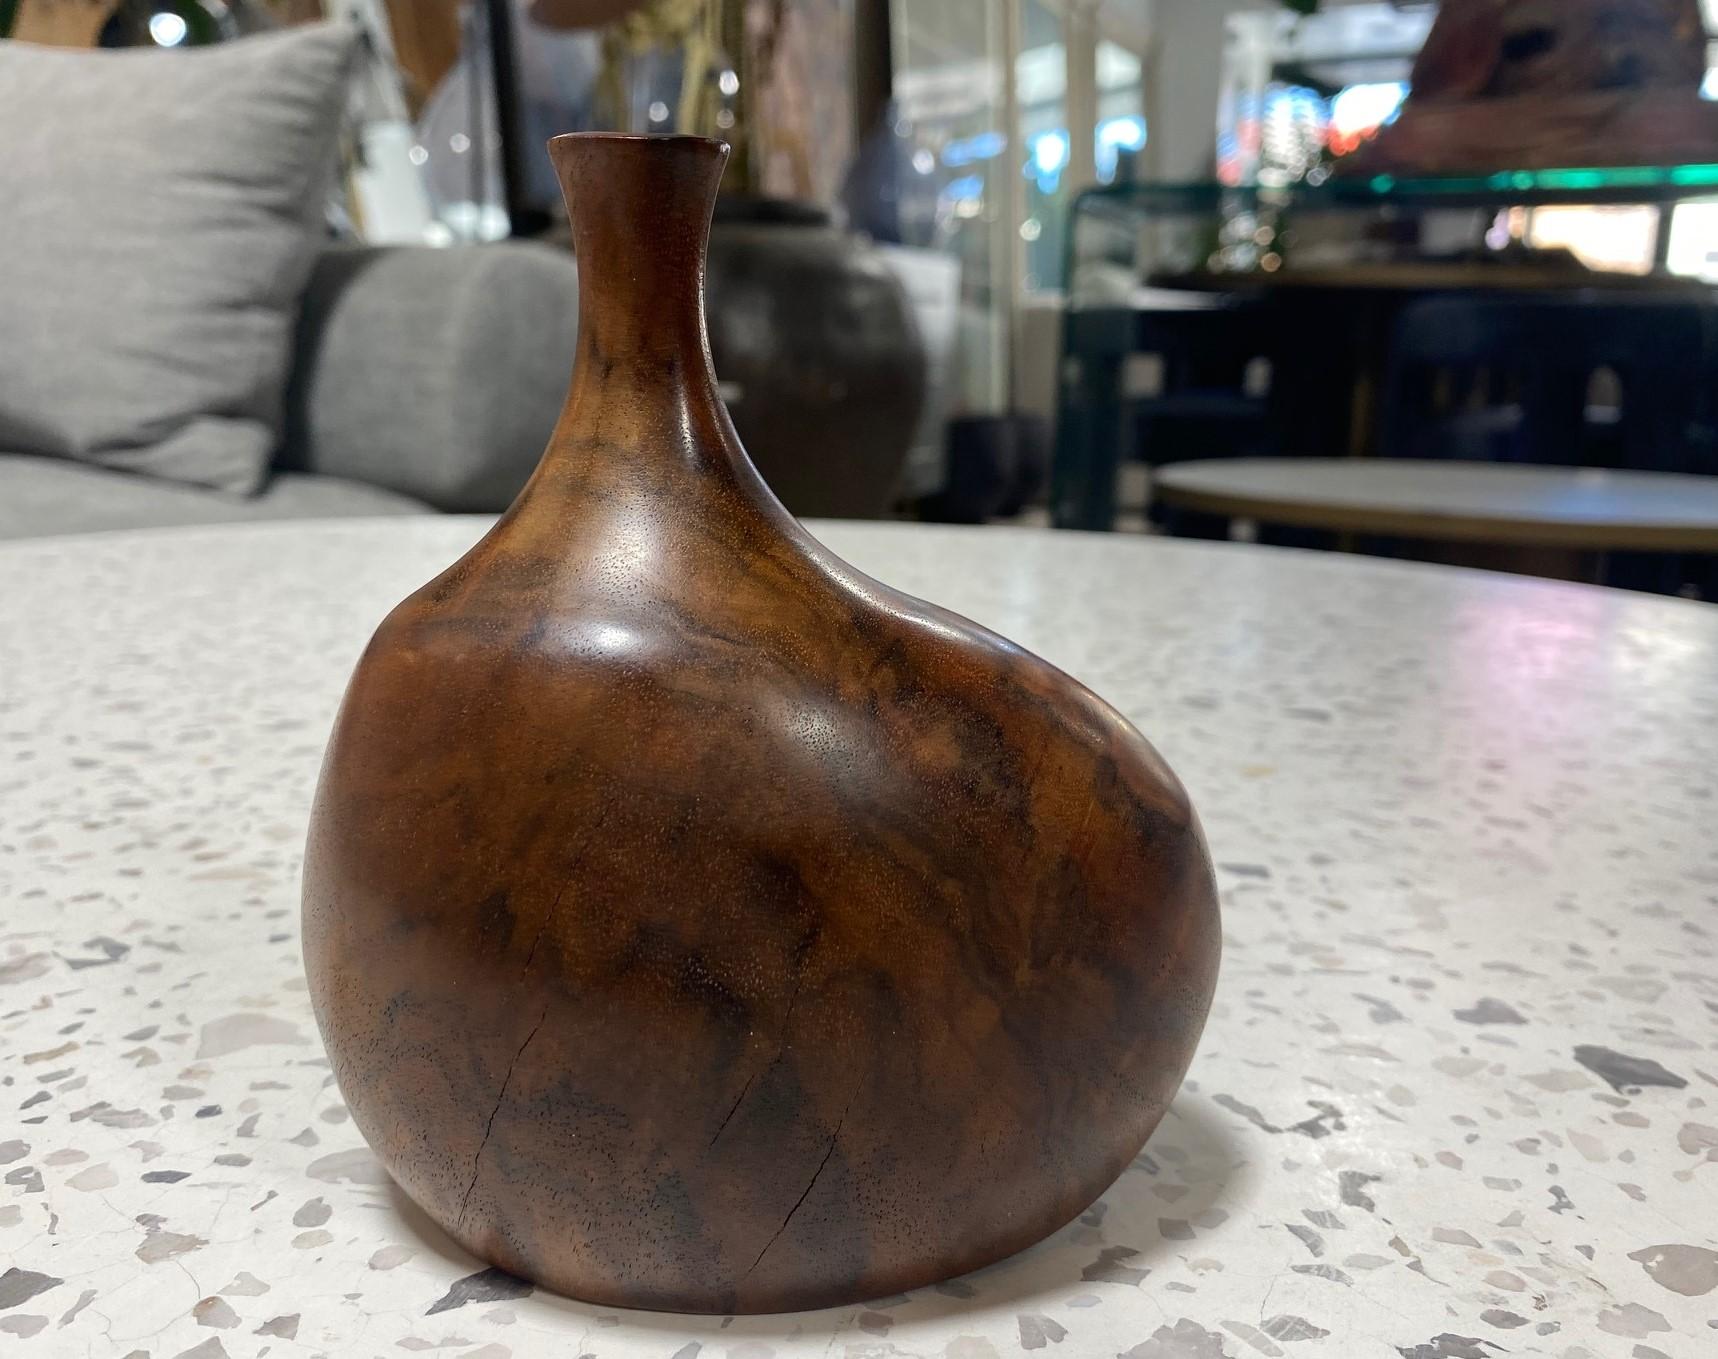 Eine sehr schön gearbeitete und geschnitzte Vase aus Holz von dem famosen amerikanischen (Mendocino, Kalifornien) Künstler/Bildhauer Doug Ayers. Die natürliche, organische Maserung des Holzes ist bei diesem Stück besonders spektakulär. 

Signiert